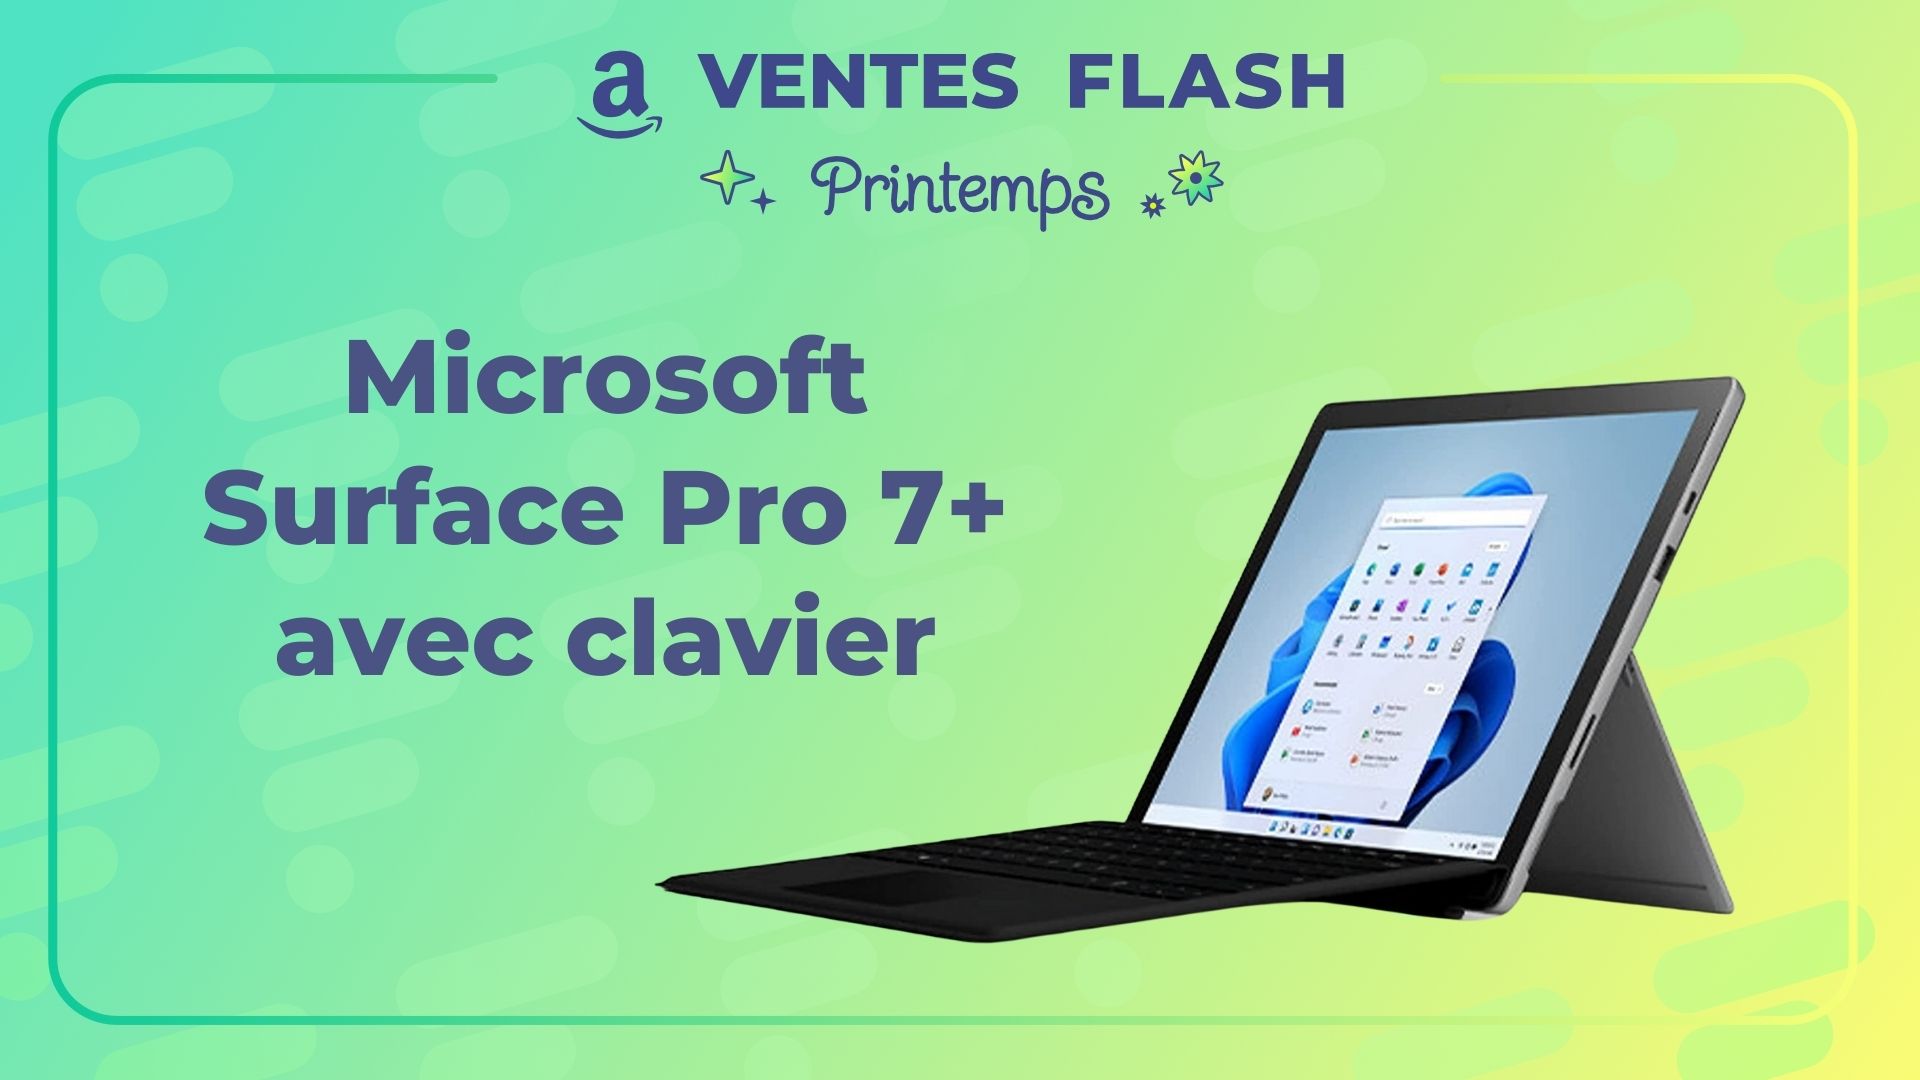 Vente flash inédite sur l'ordinateur portable Microsoft Surface